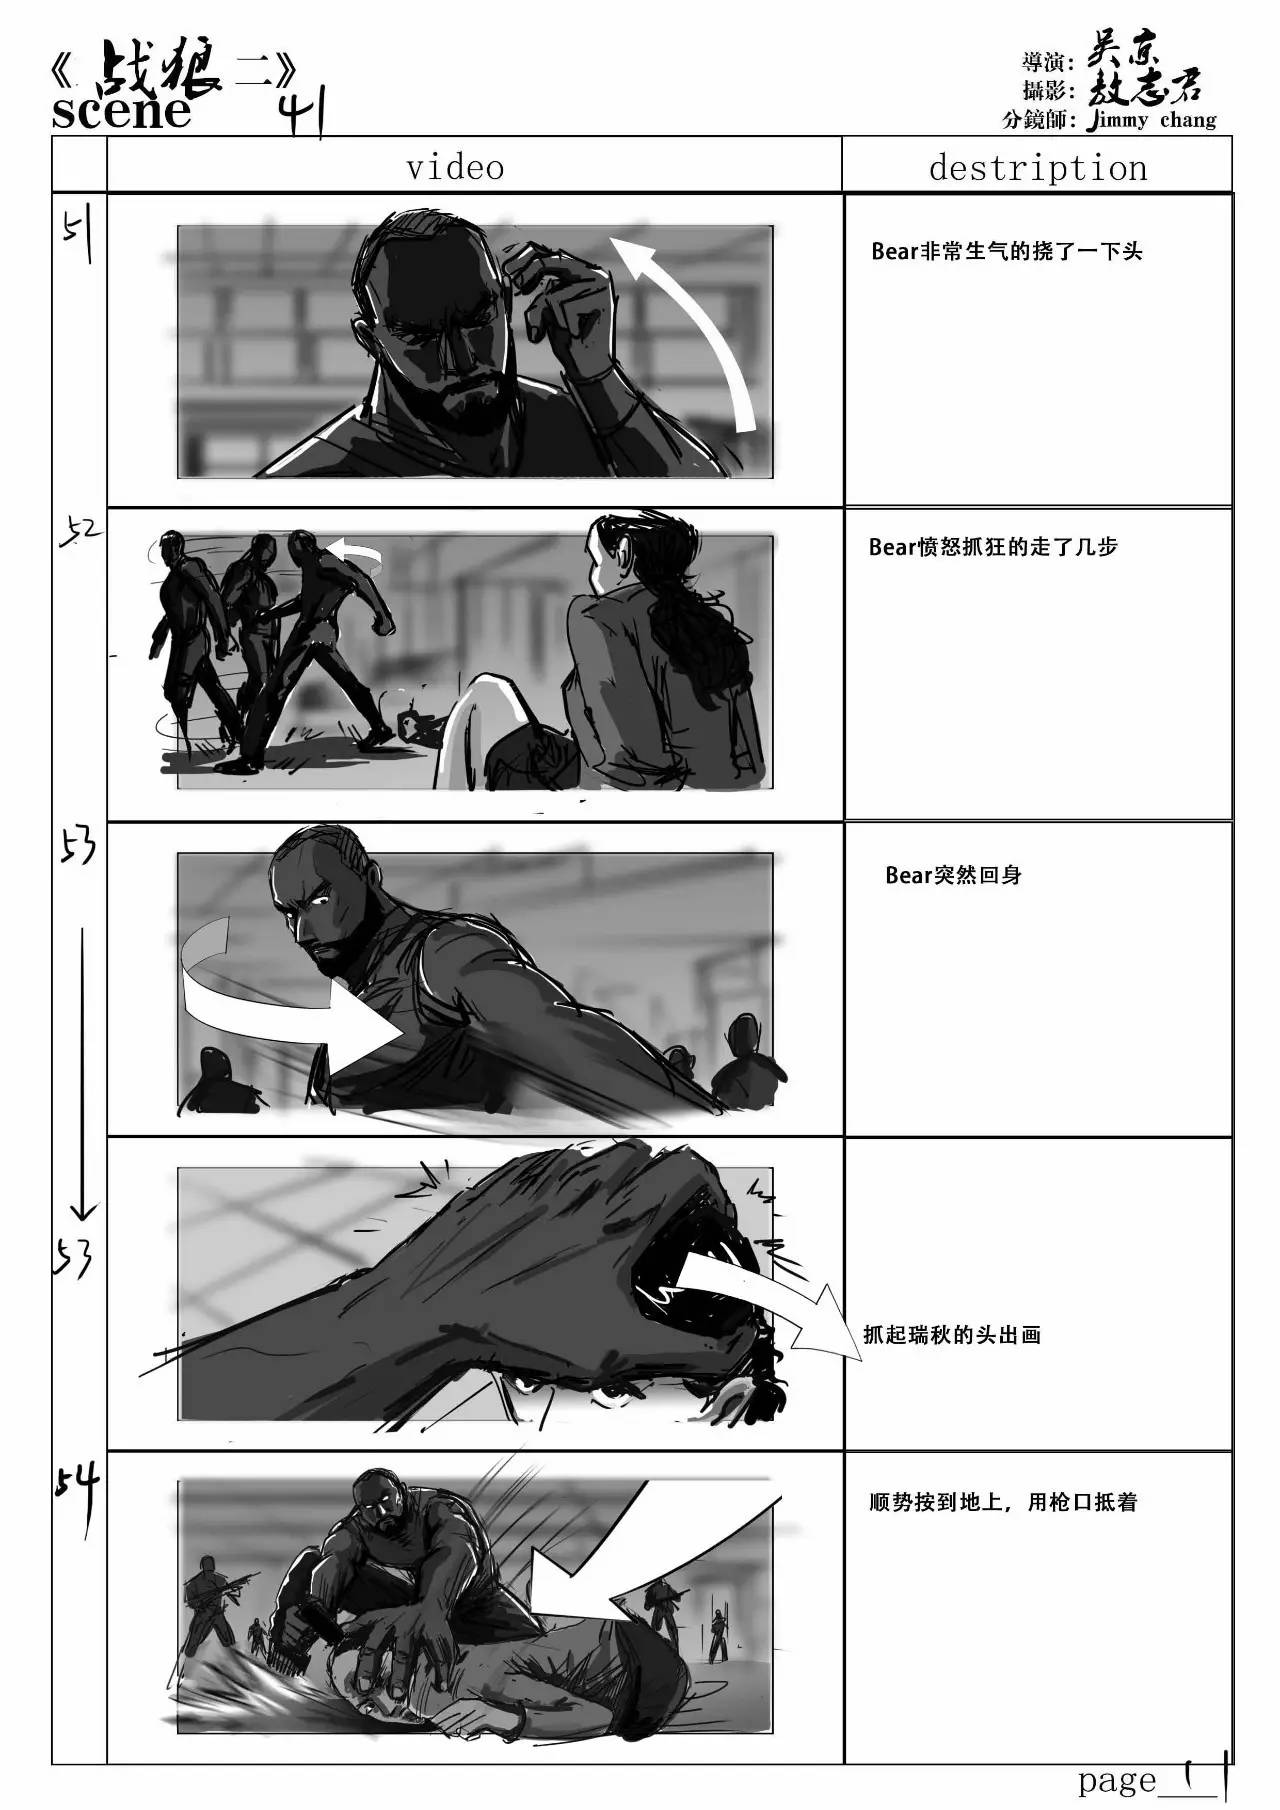 分镜头绘制和设计,相比之下,和吴京导演合作《战狼2》的分镜有什么不